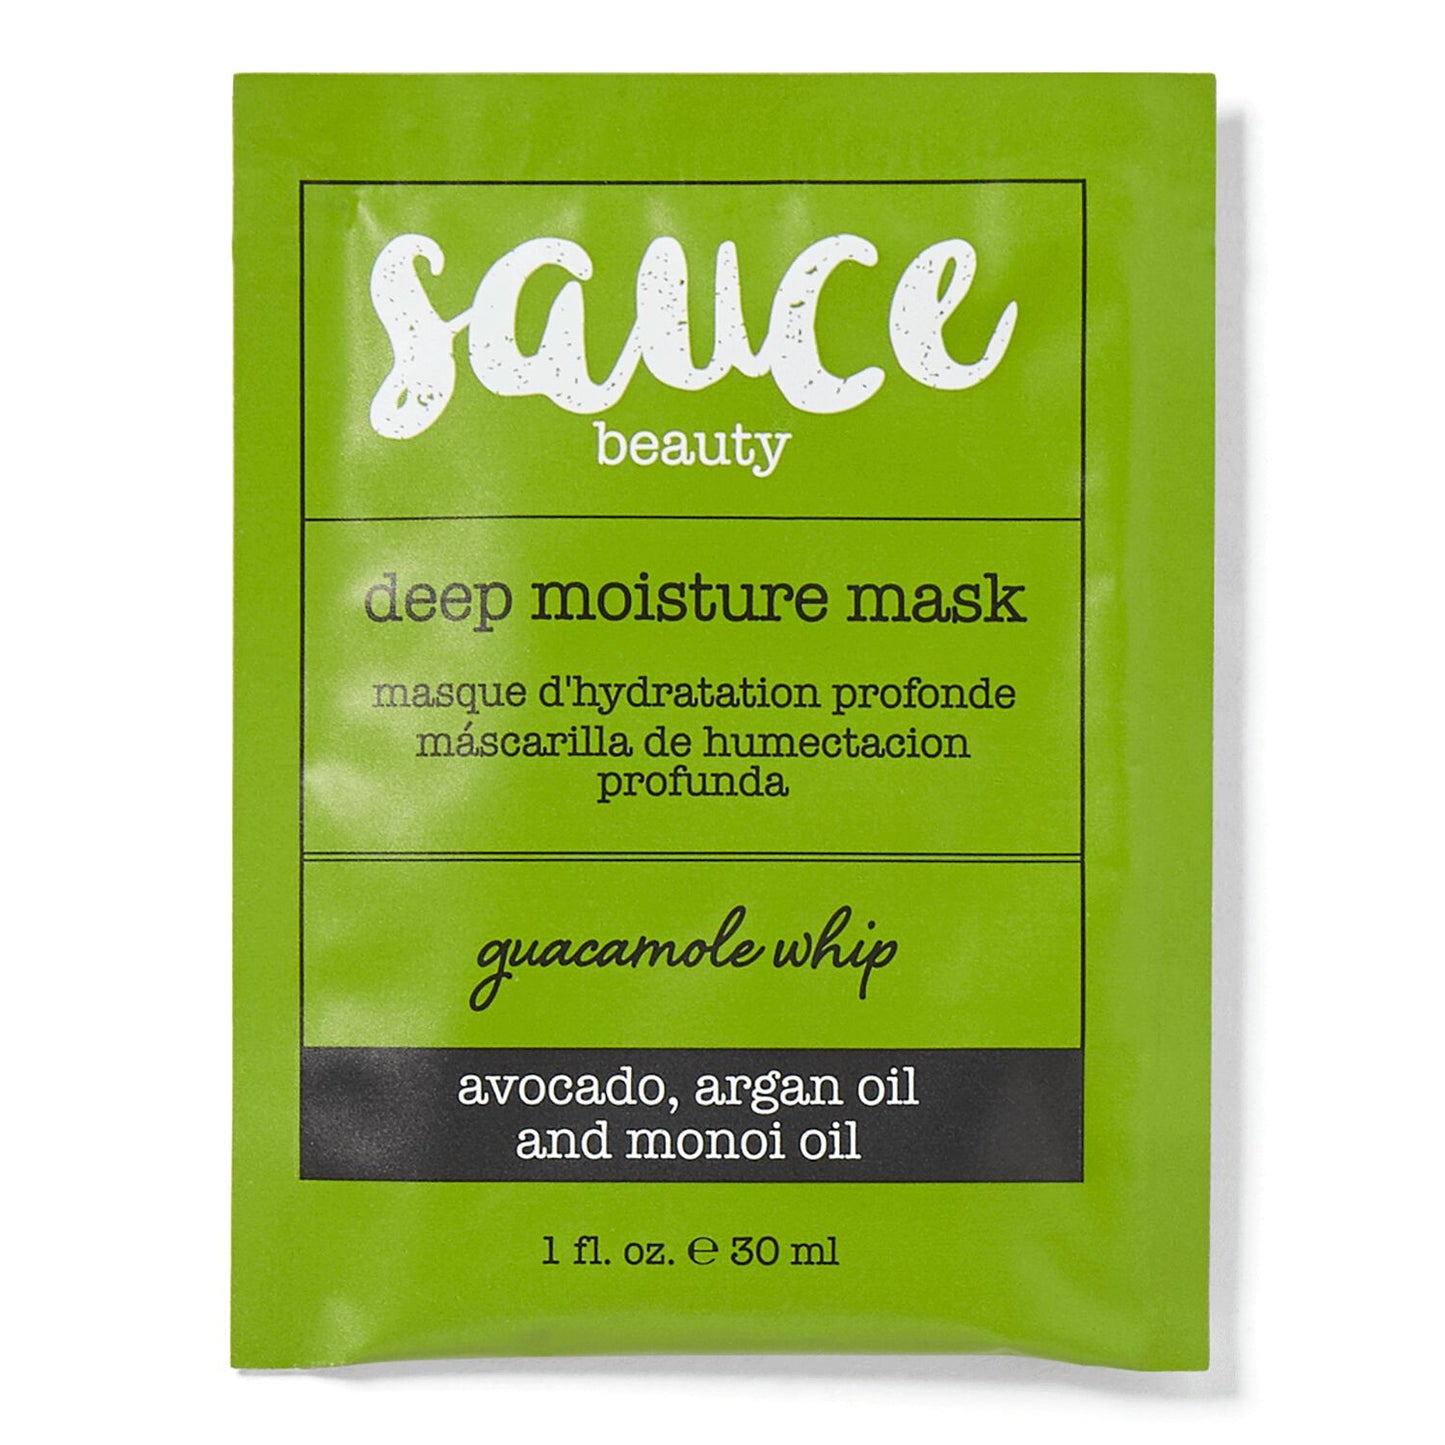 Sauce Beauty Guacamole Whip Deep Moisture Hair Mask Packette